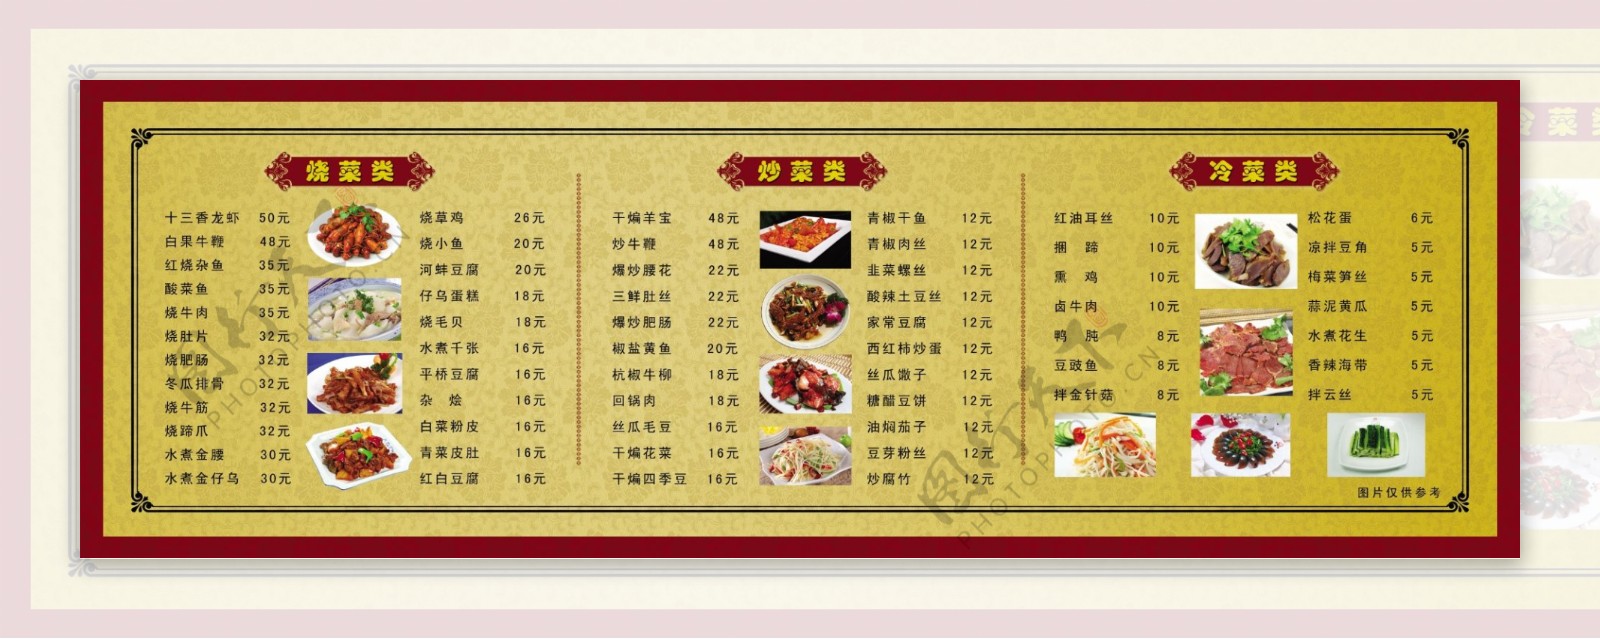 饭店菜单展板图片